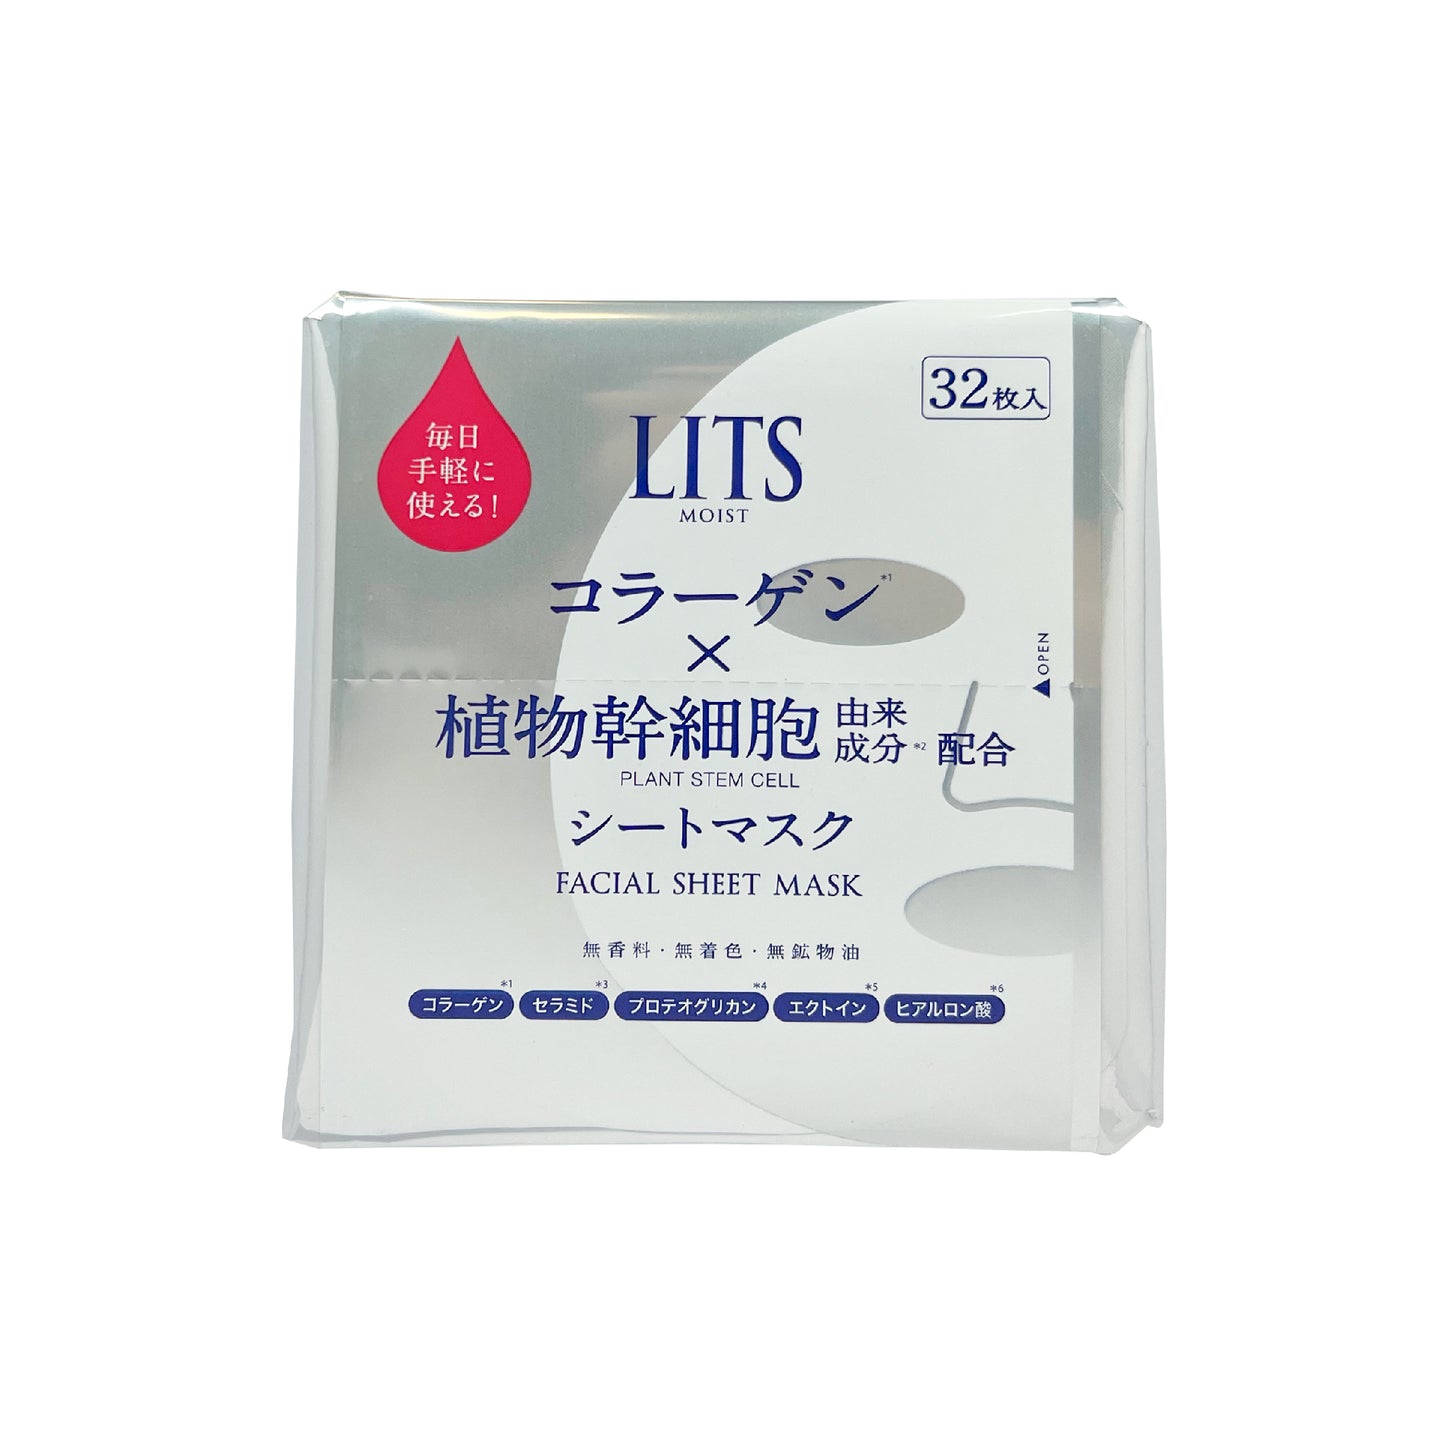 LITS 植物幹細胞保濕面膜 32 pcs